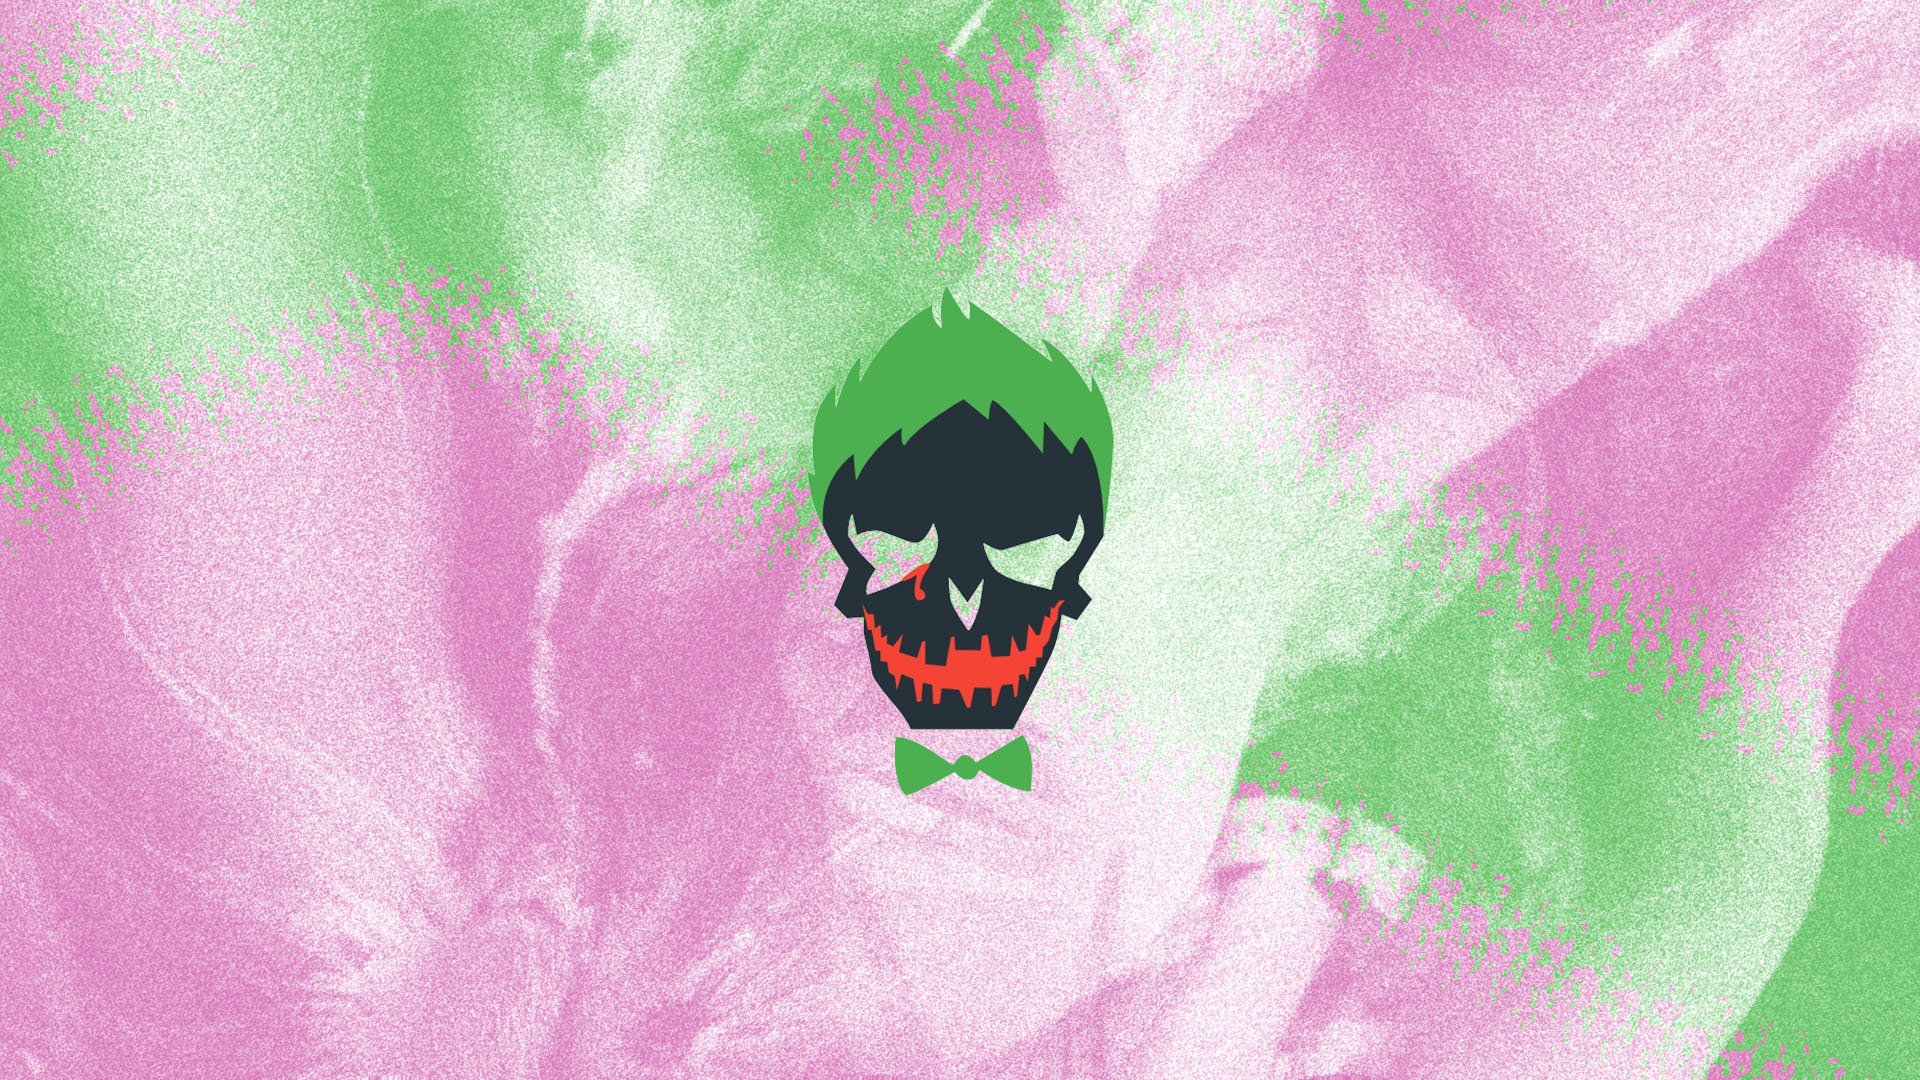 Joker, Harley Quinn, Suicide Squad, DC Comics Wallpaper